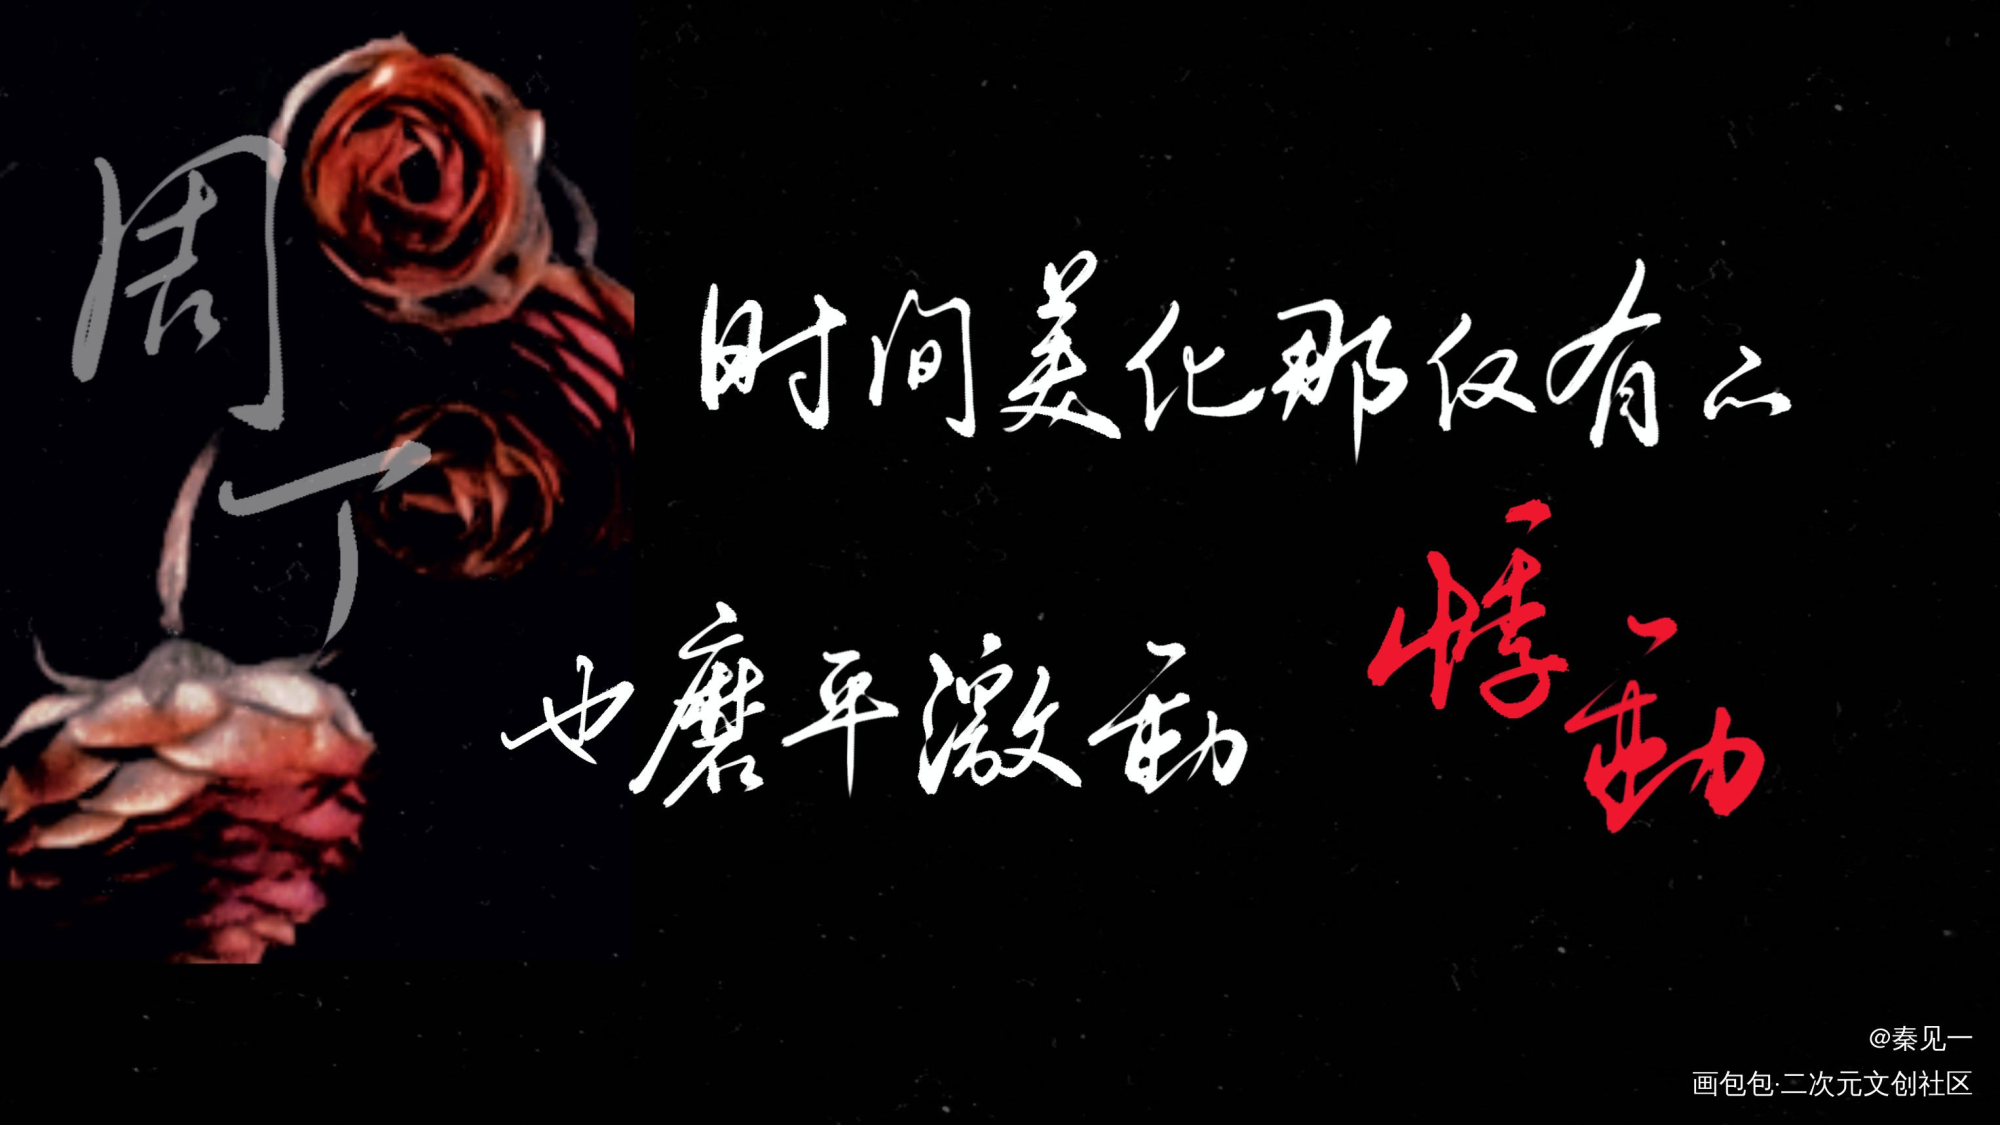 【188男团】《红玫瑰》合札_188男团188男团周边设计字体设计红玫瑰红玫瑰绘画作品